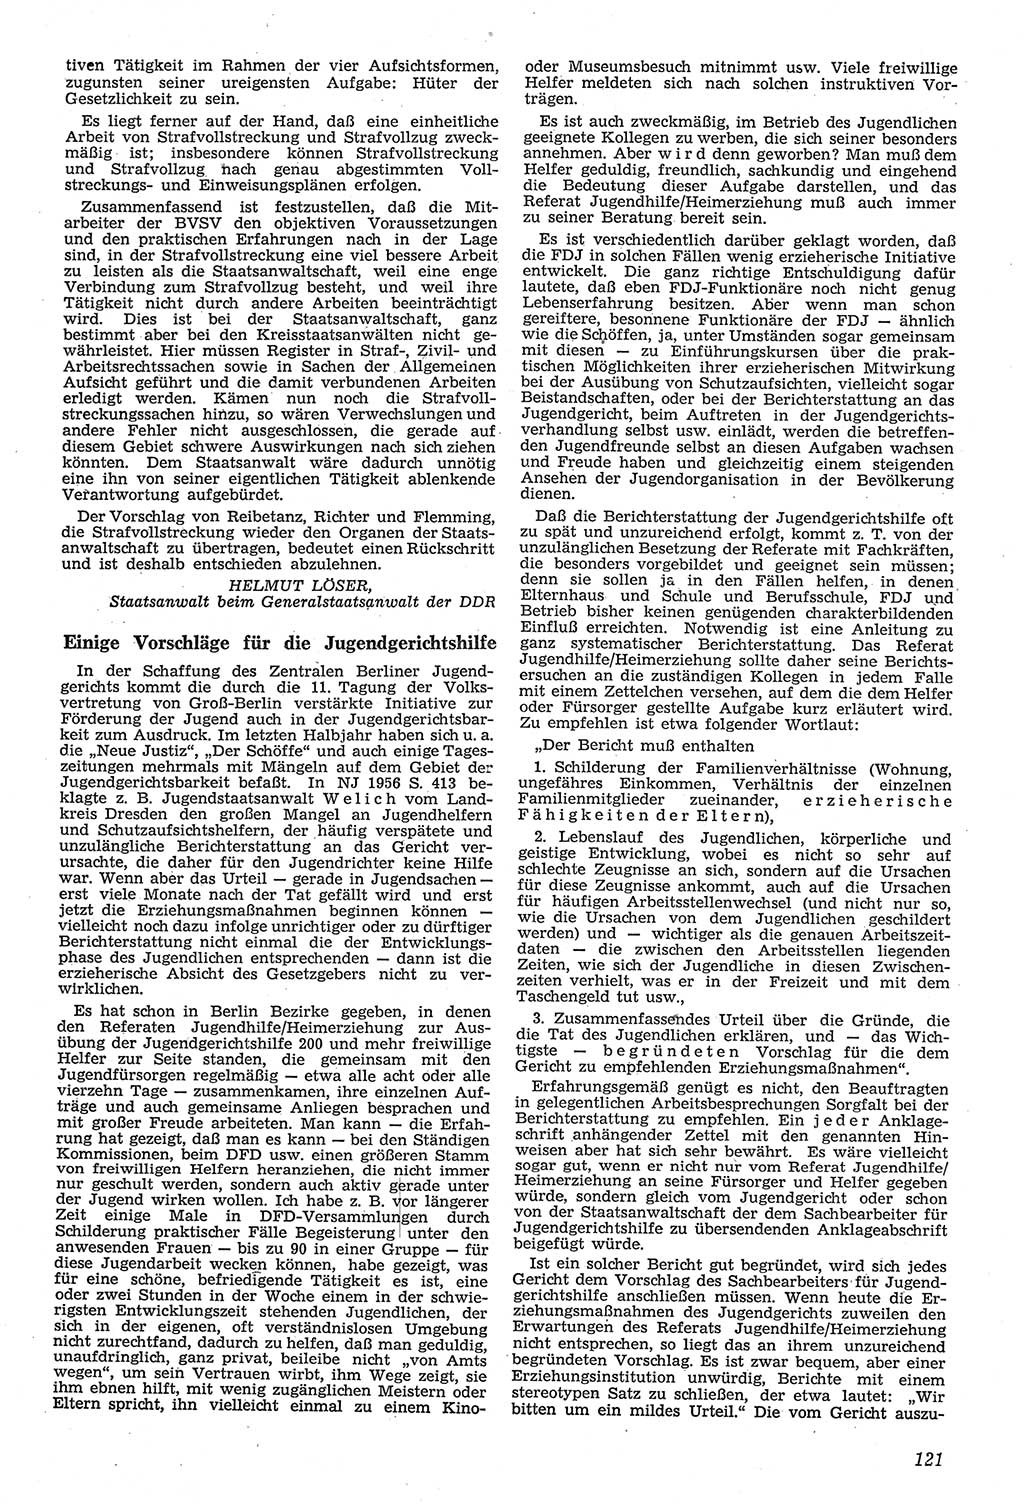 Neue Justiz (NJ), Zeitschrift für Recht und Rechtswissenschaft [Deutsche Demokratische Republik (DDR)], 11. Jahrgang 1957, Seite 121 (NJ DDR 1957, S. 121)